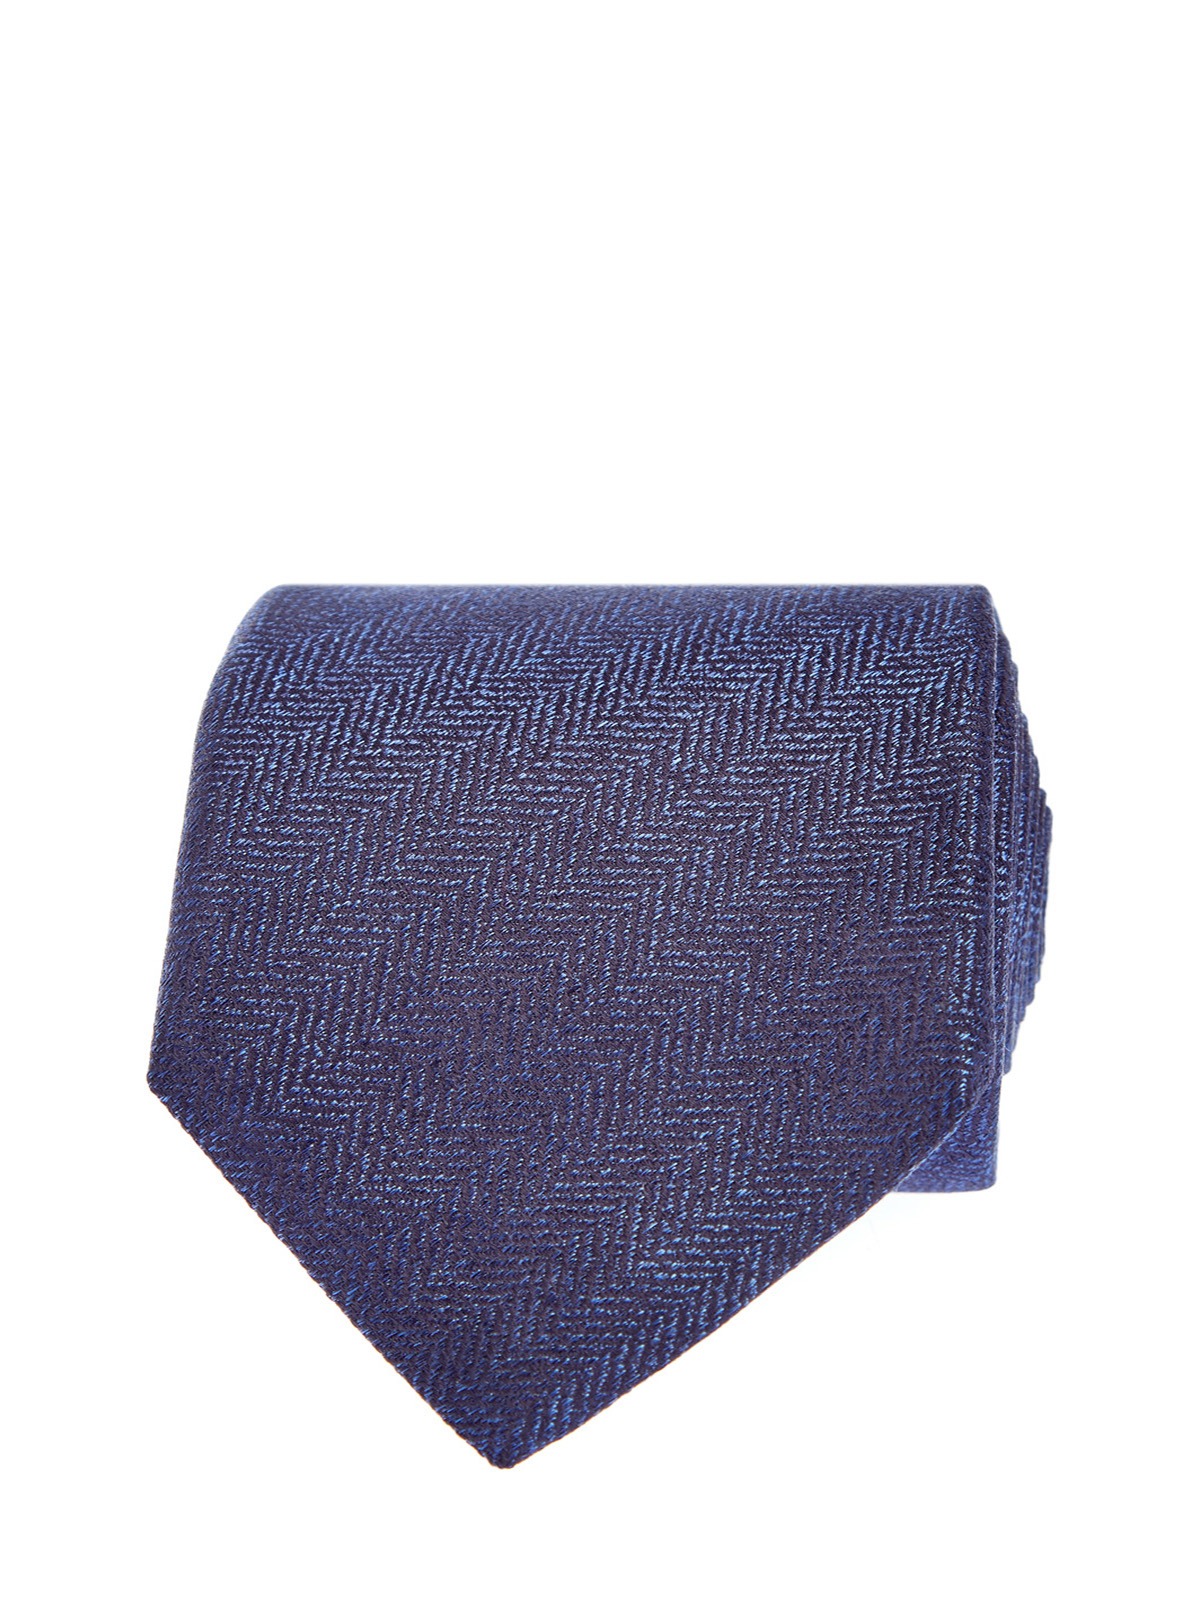 Шелковый галстук в синих тонах CANALI, цвет синий, размер 41;41.5;42;42.5;43;43.5;44